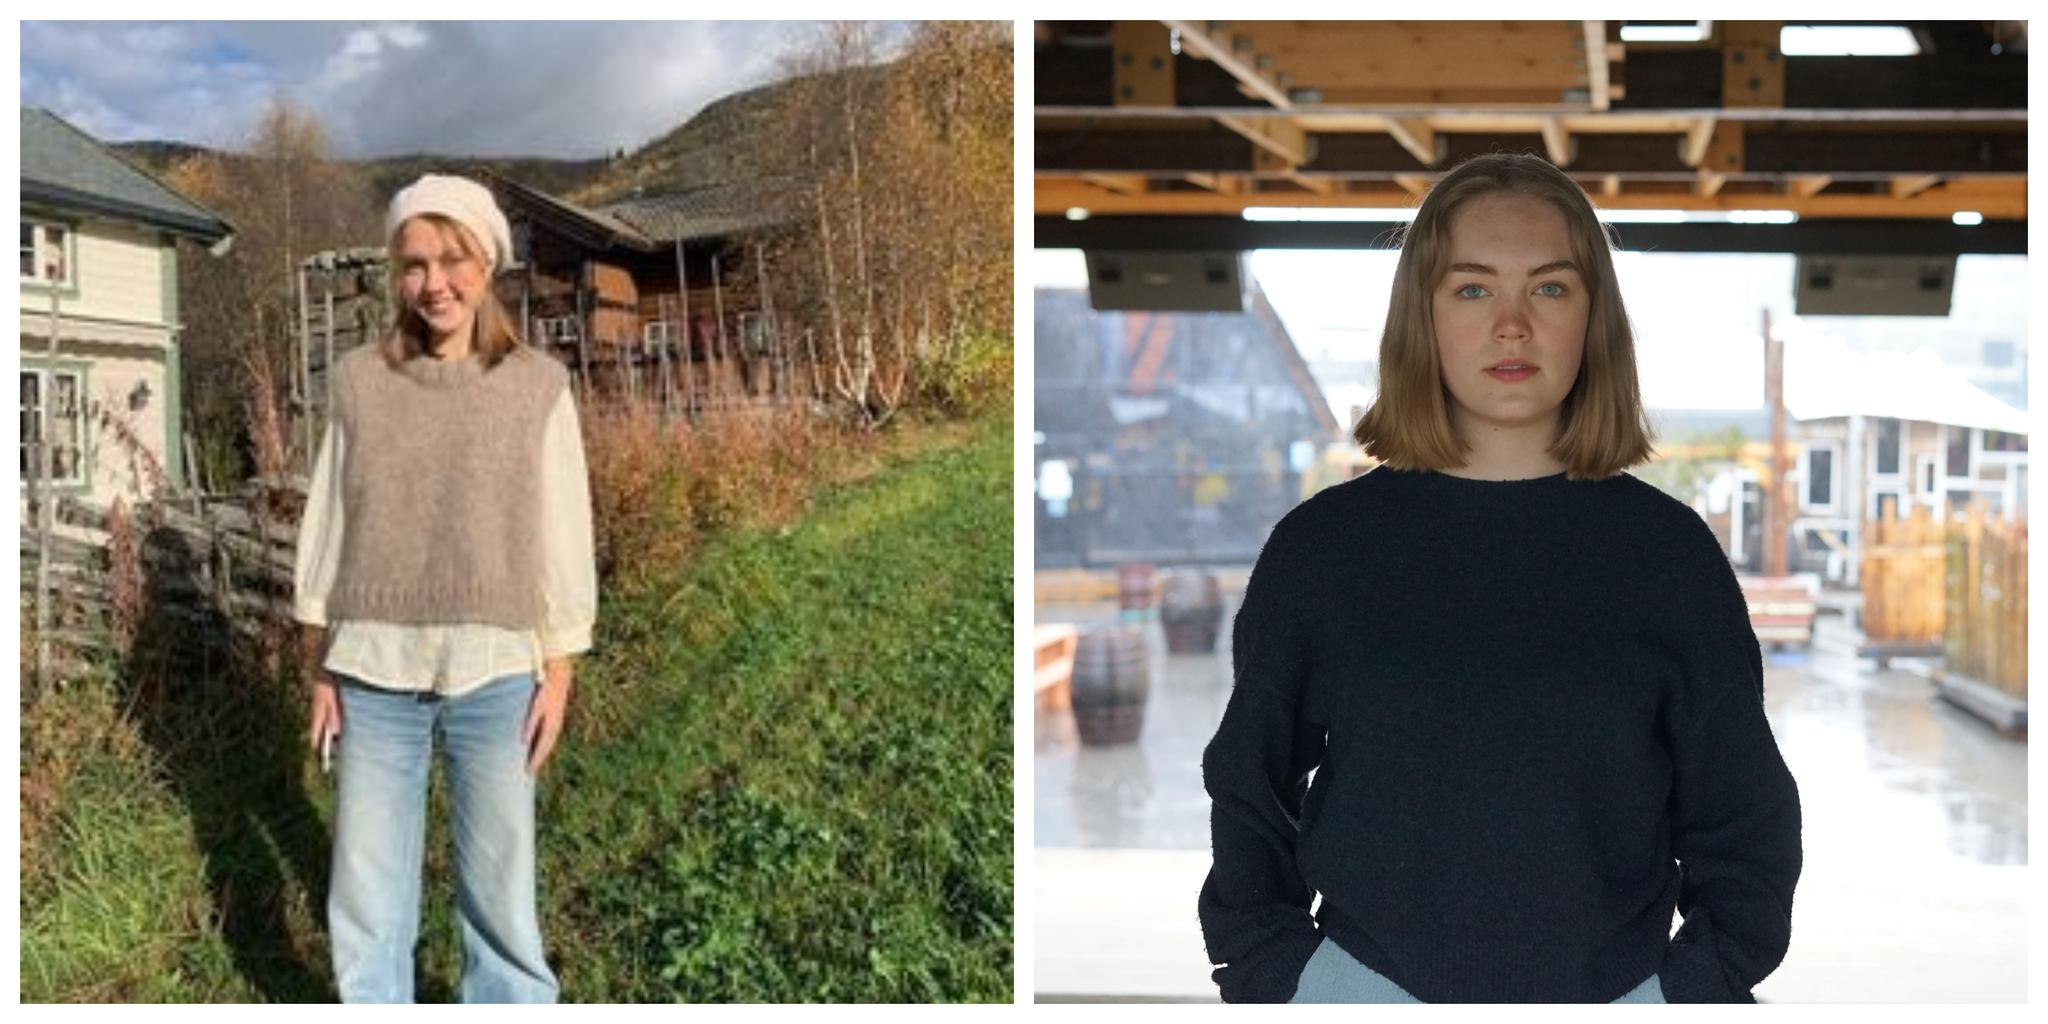 Ella Sidsel Svendsen Kvam (16), leder av Rogaland Grønn Ungdom. Og Helena Bugge (15), leder av Oslo Grønn Ungdom.